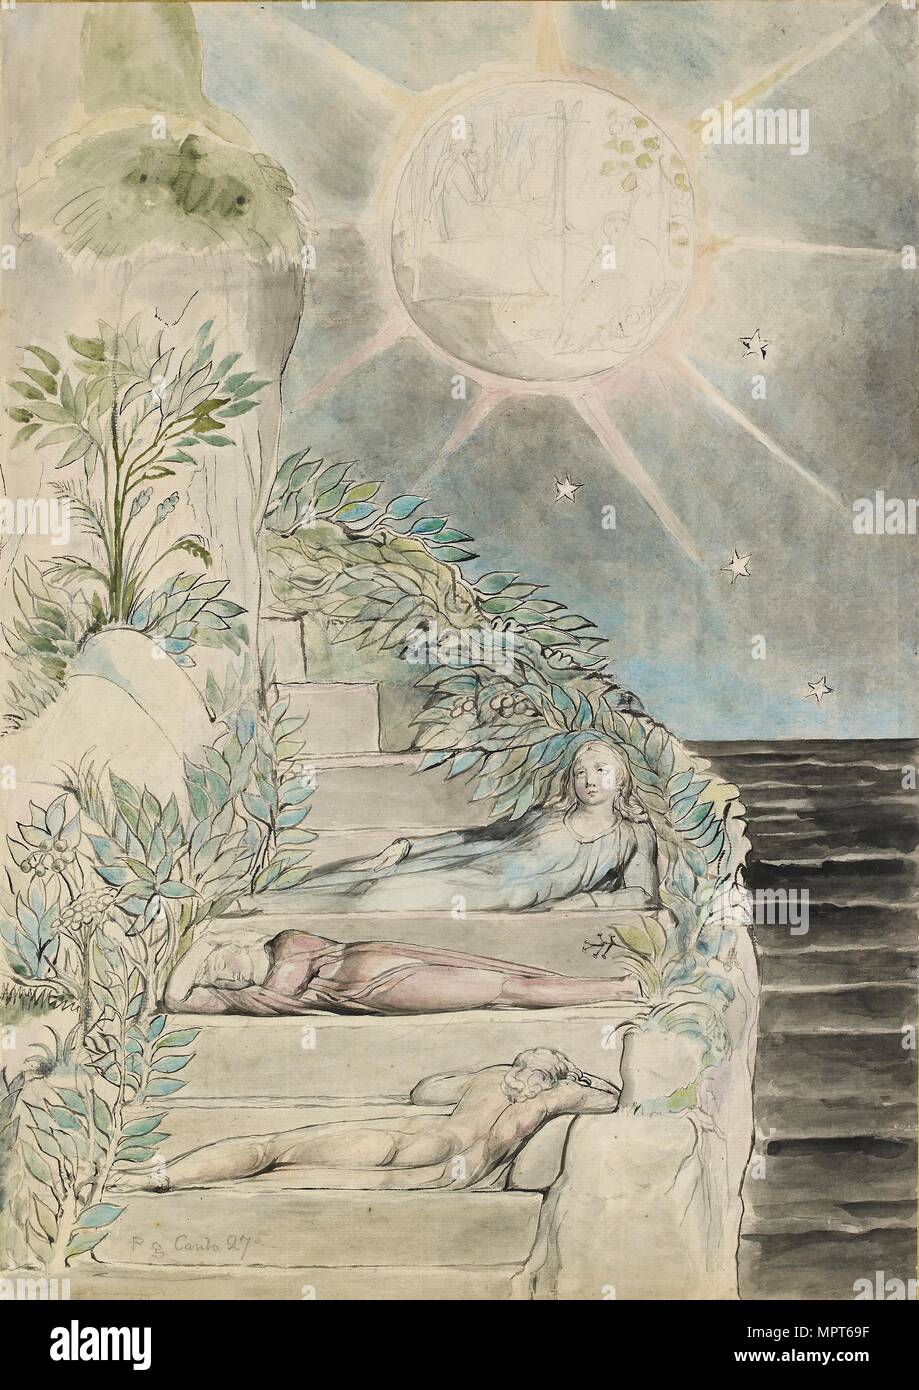 Dante und Vergil Statius schlafen, beobachten (Abbildung der 'Göttlichen Komödie', Purgatorio XXVII), Künstler: William Blake. Stockfoto